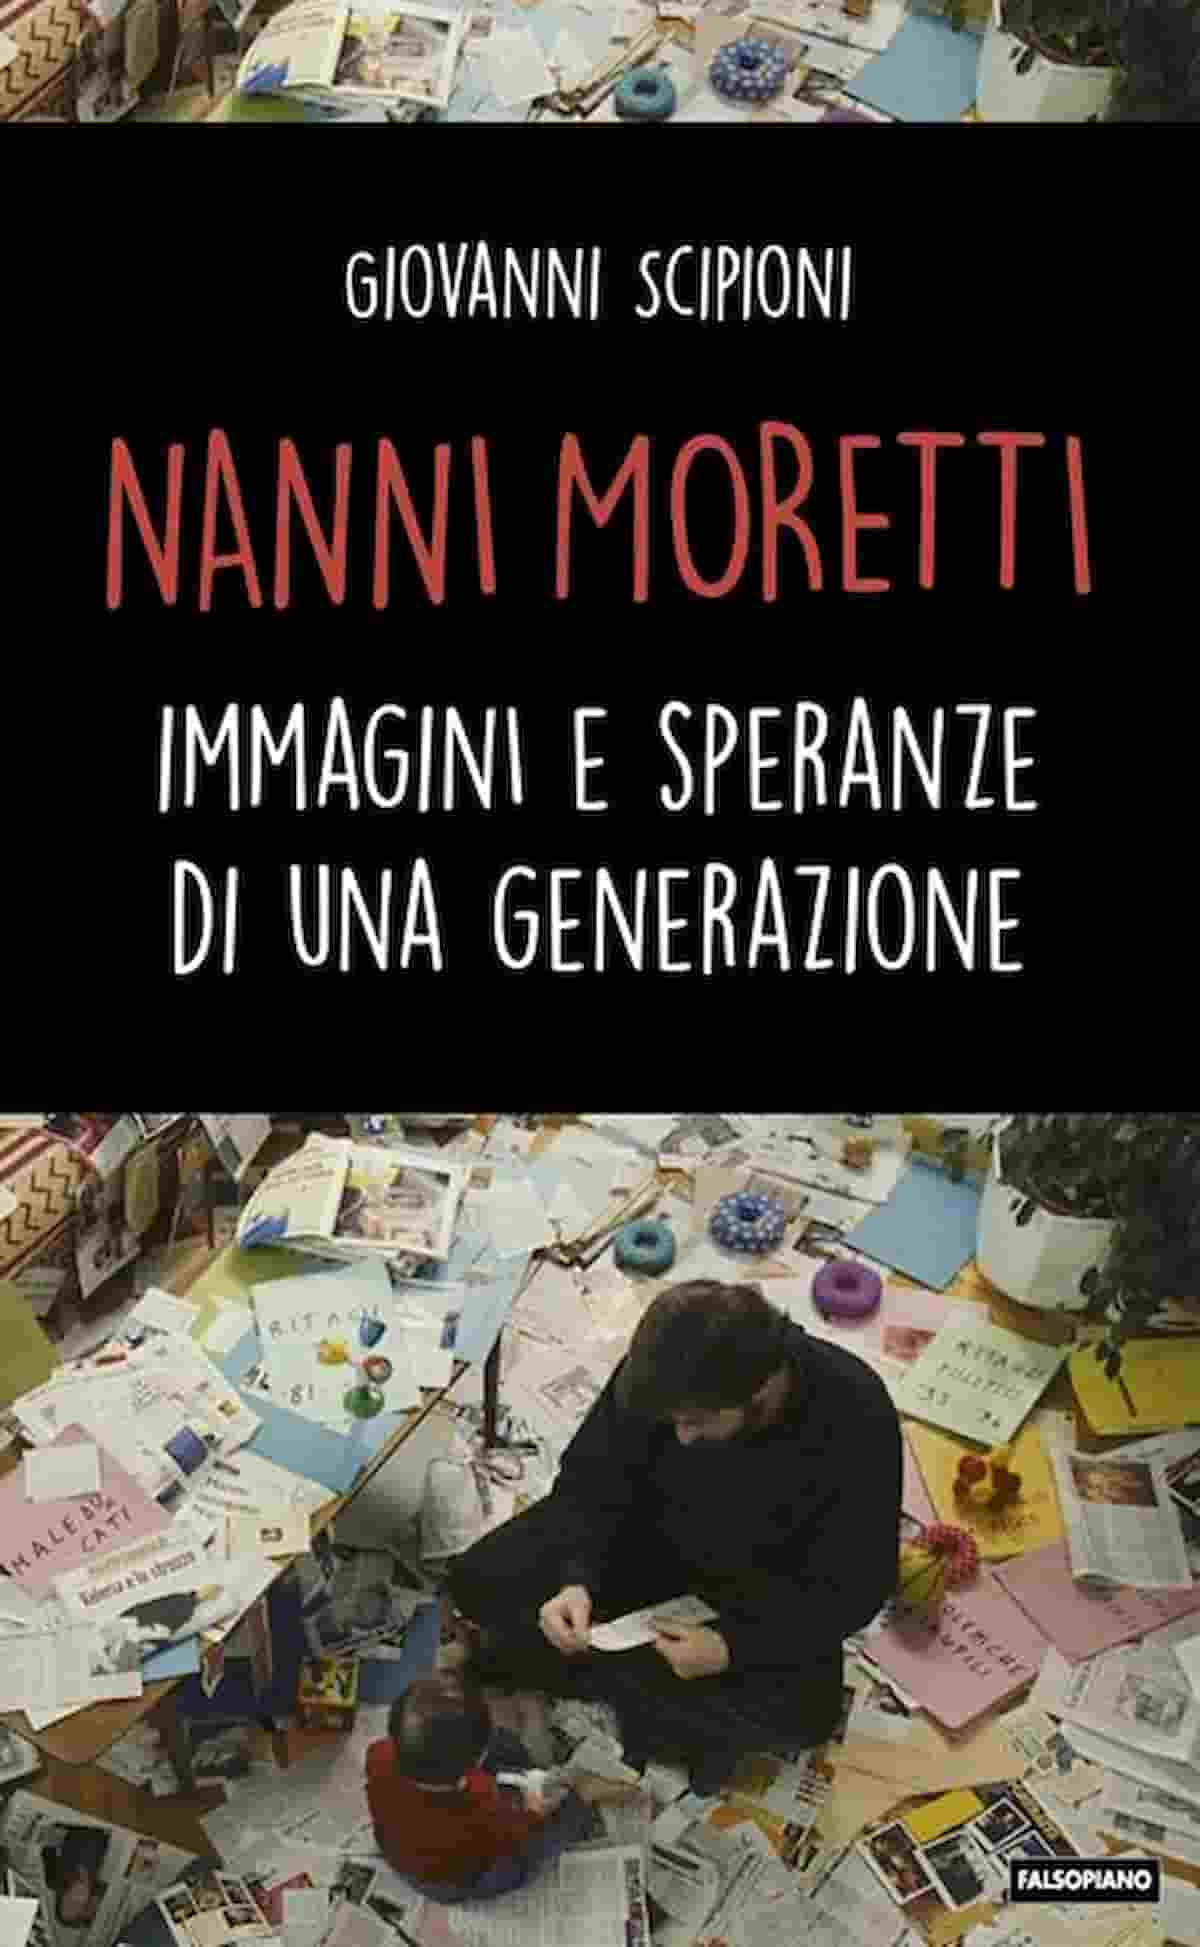 Nanni Moretti, simbolo, voce e immagine di una generazione di una certa sinistra nel libro di Giovanni Scipioni